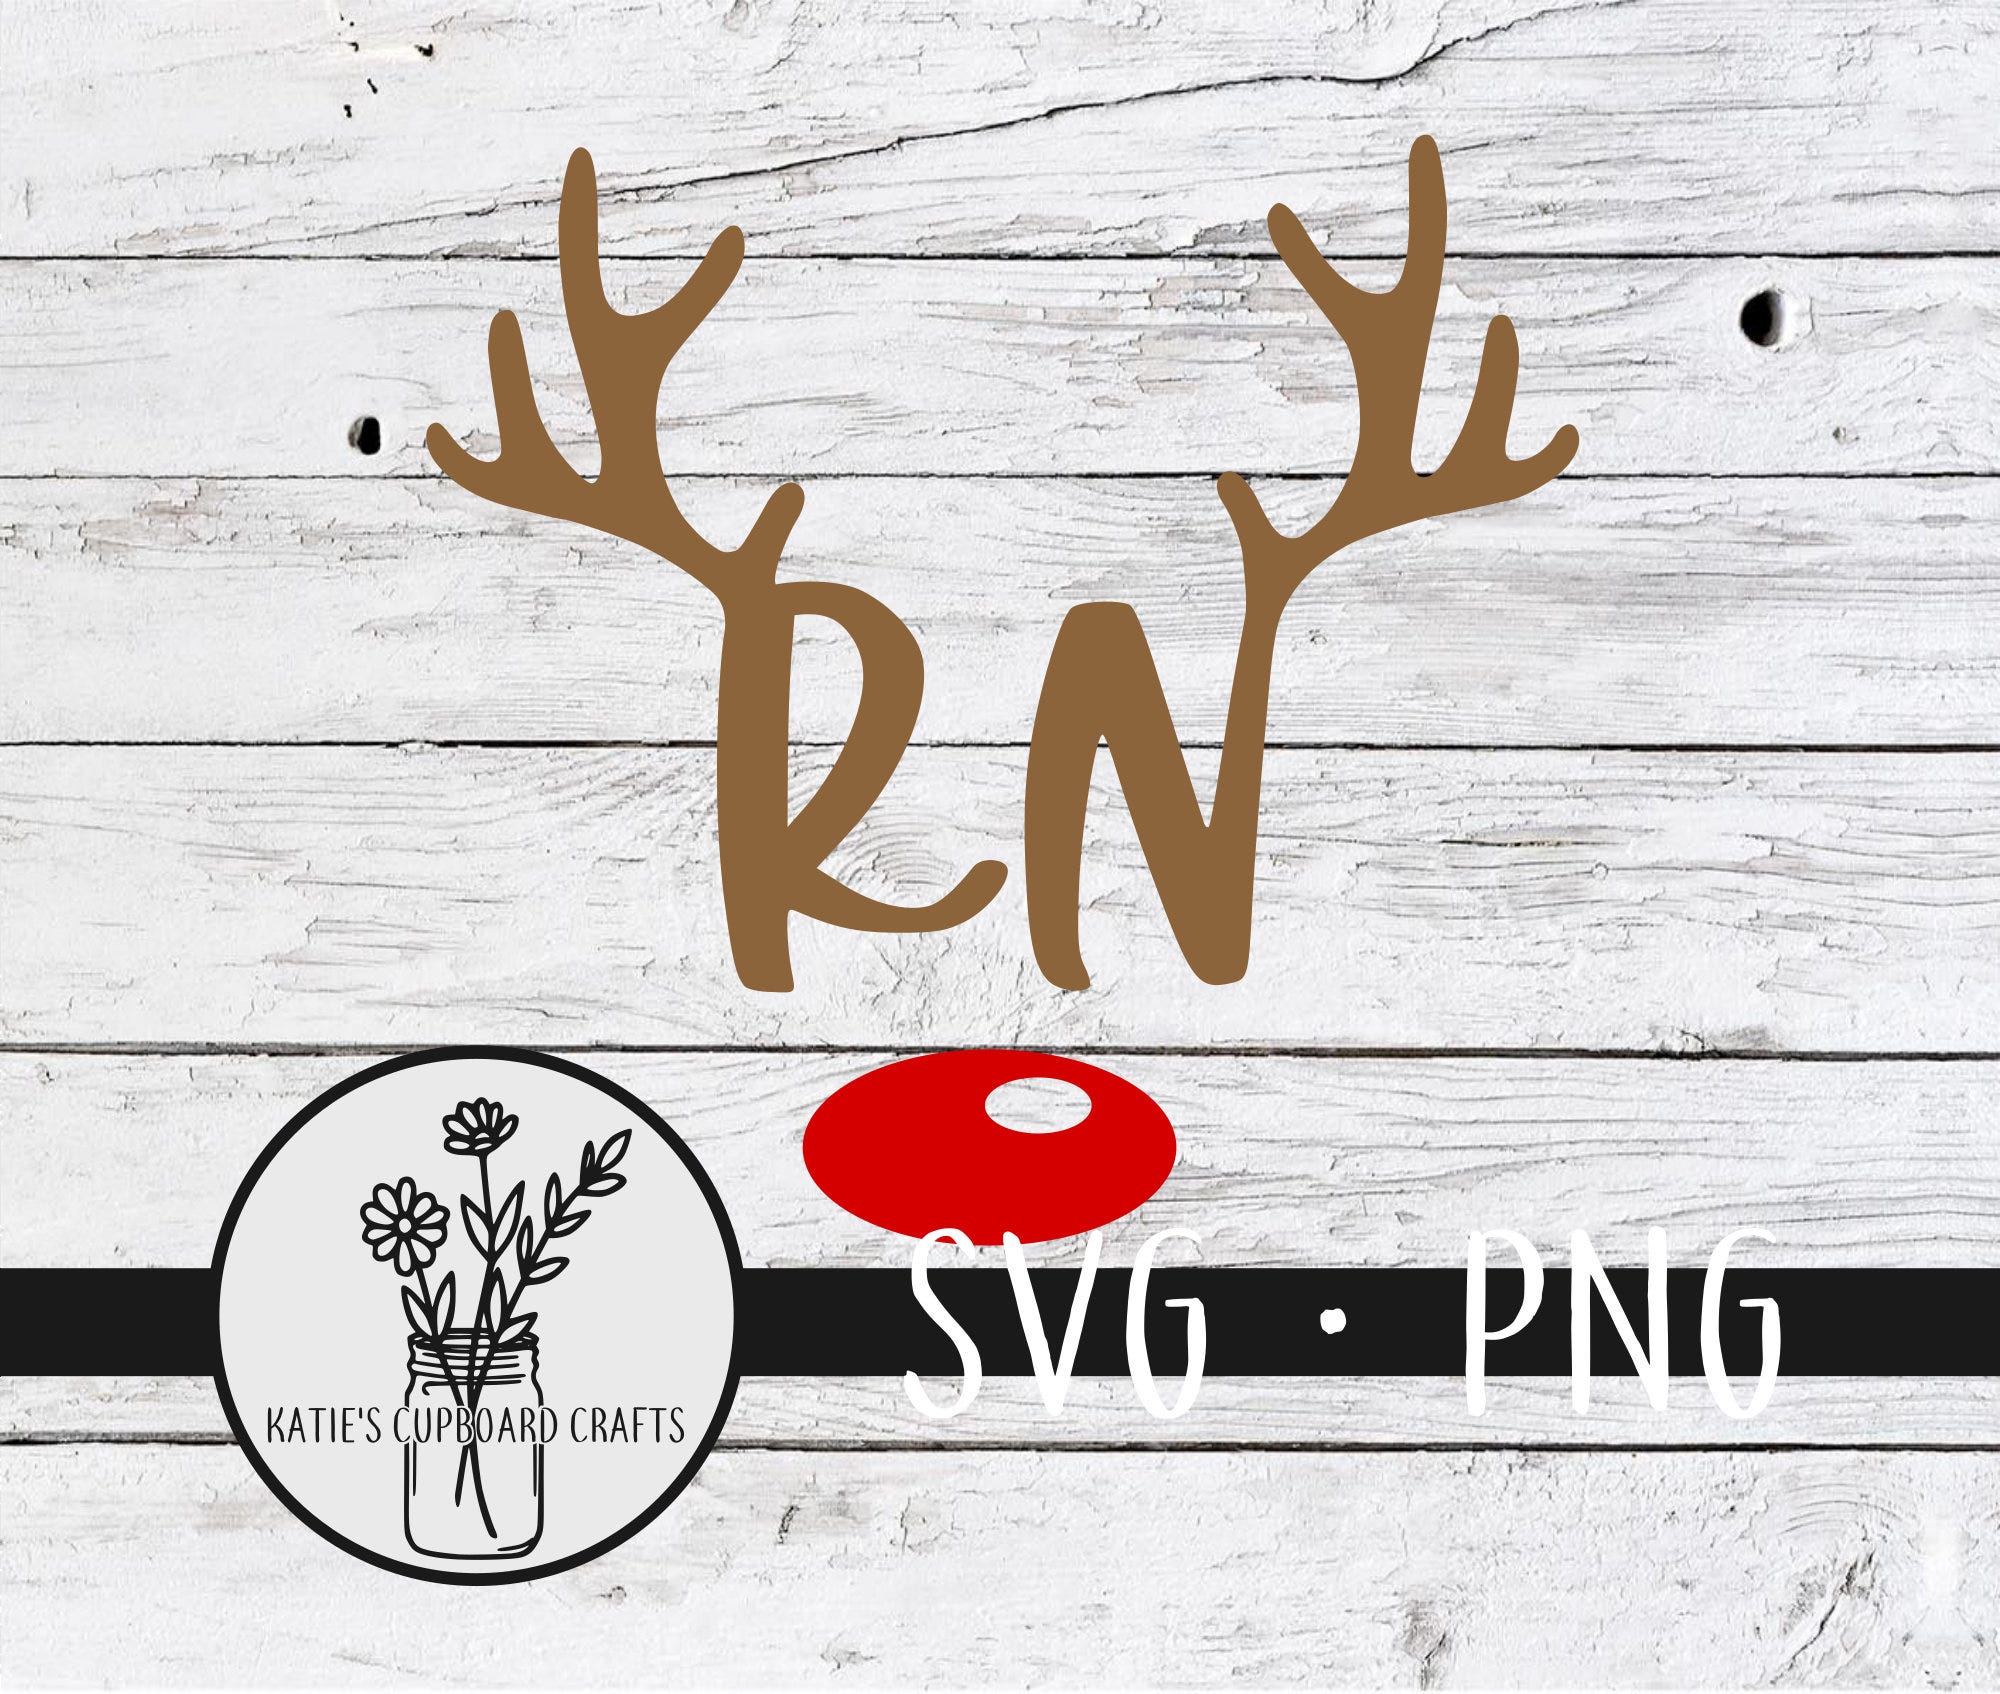 RN Reindeer; Nurse Reindeer - SVG Cut File